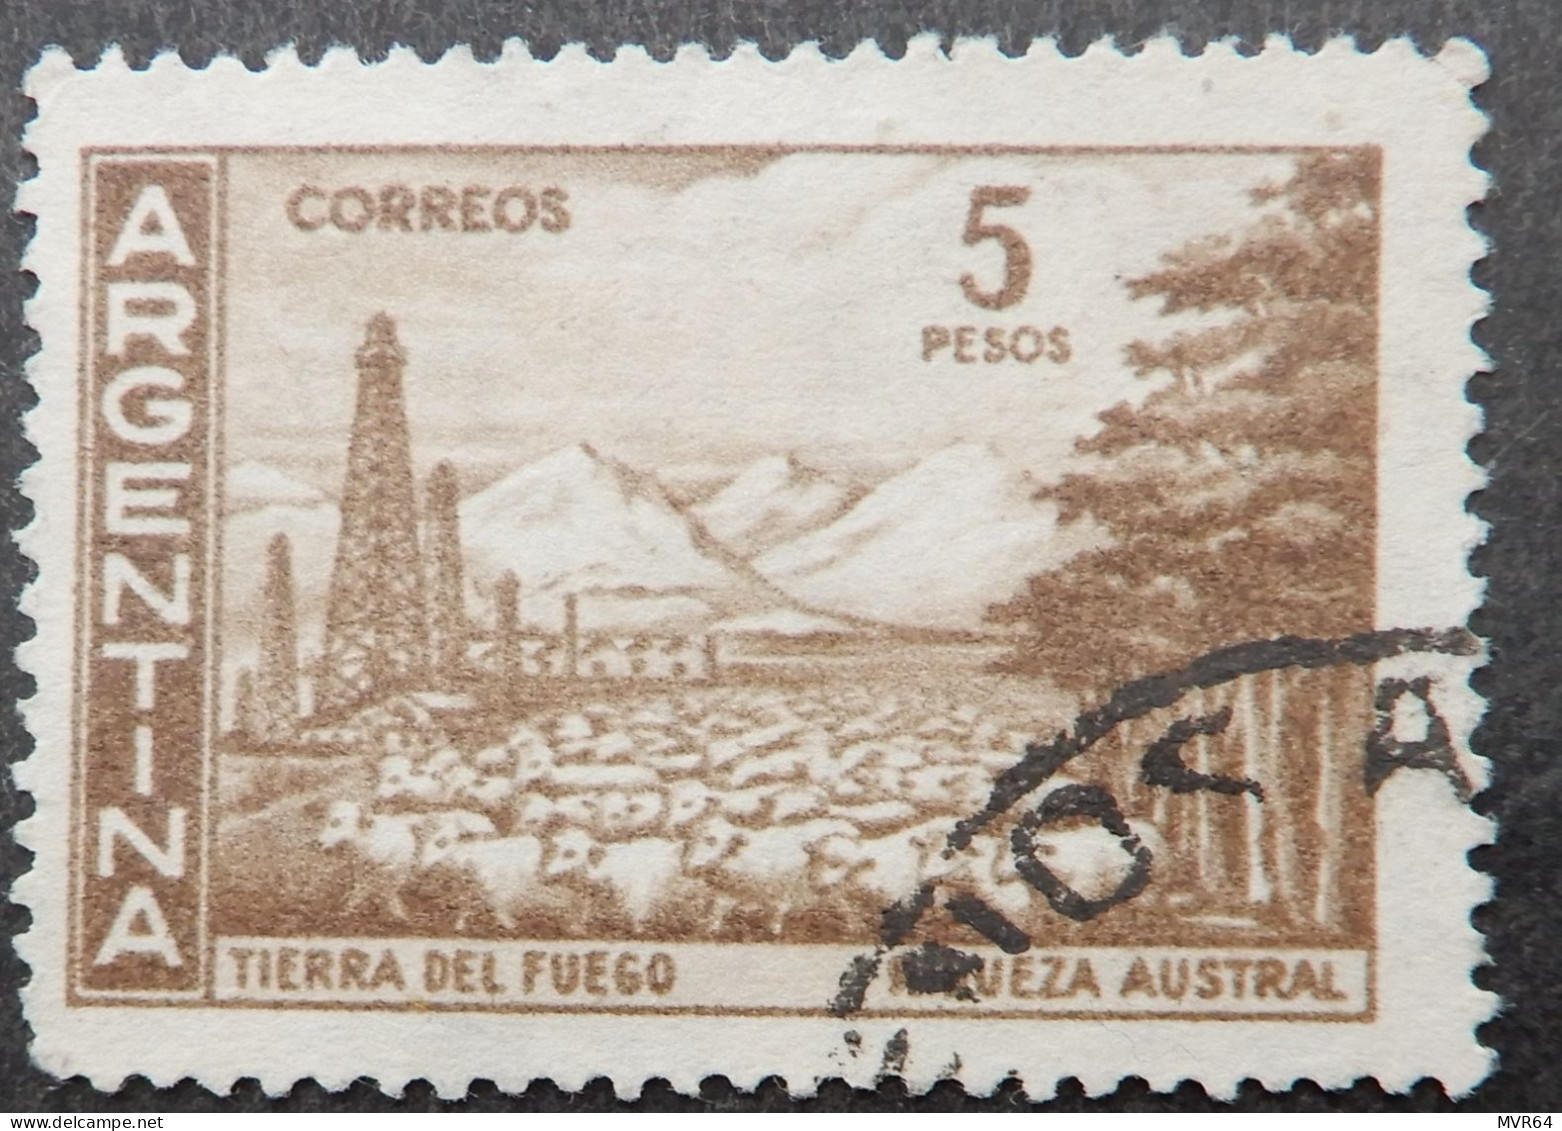 Argentinië Argentinia 1959 1960 (2) Country Views - Gebraucht